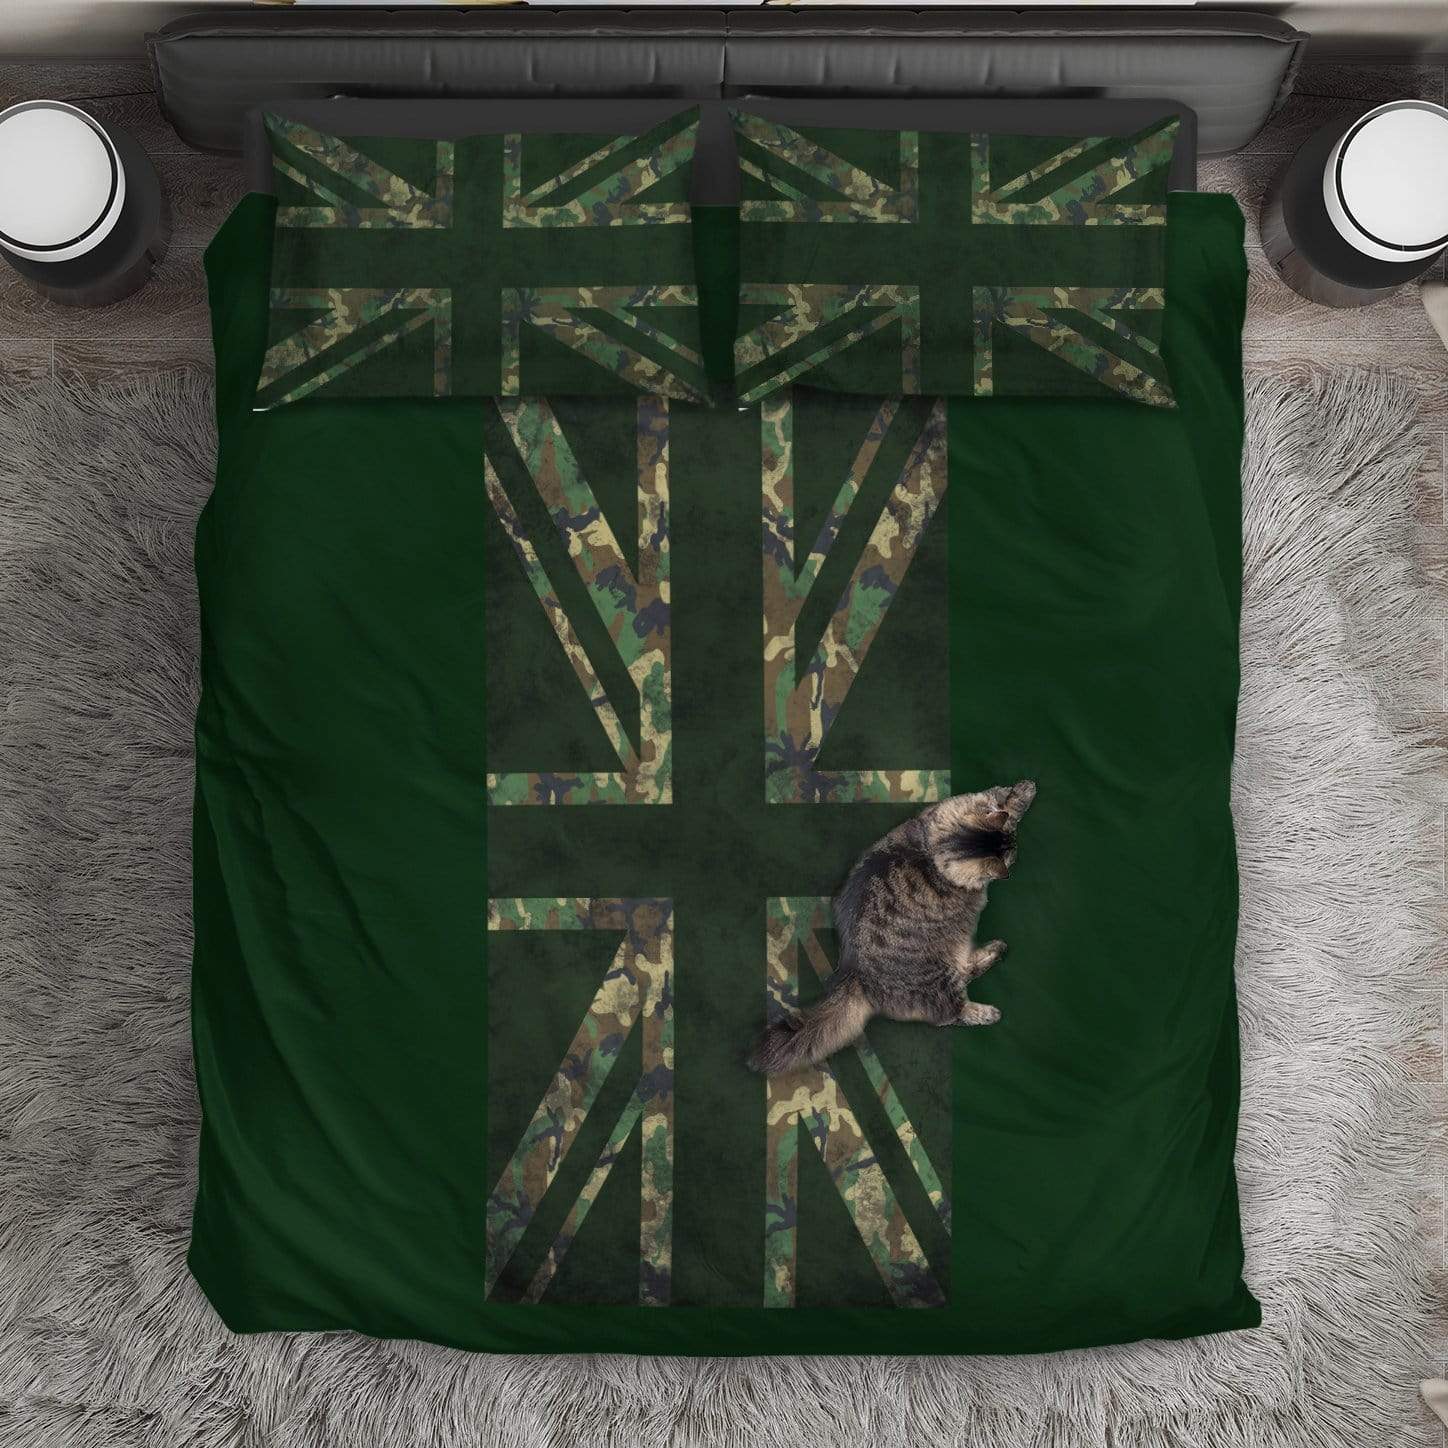 duvet Bedding Set - Black - Union Jack Camouflage Green / Queen/Full Union Jack Camouflage Duvet Cover + 2 Pillow Cases